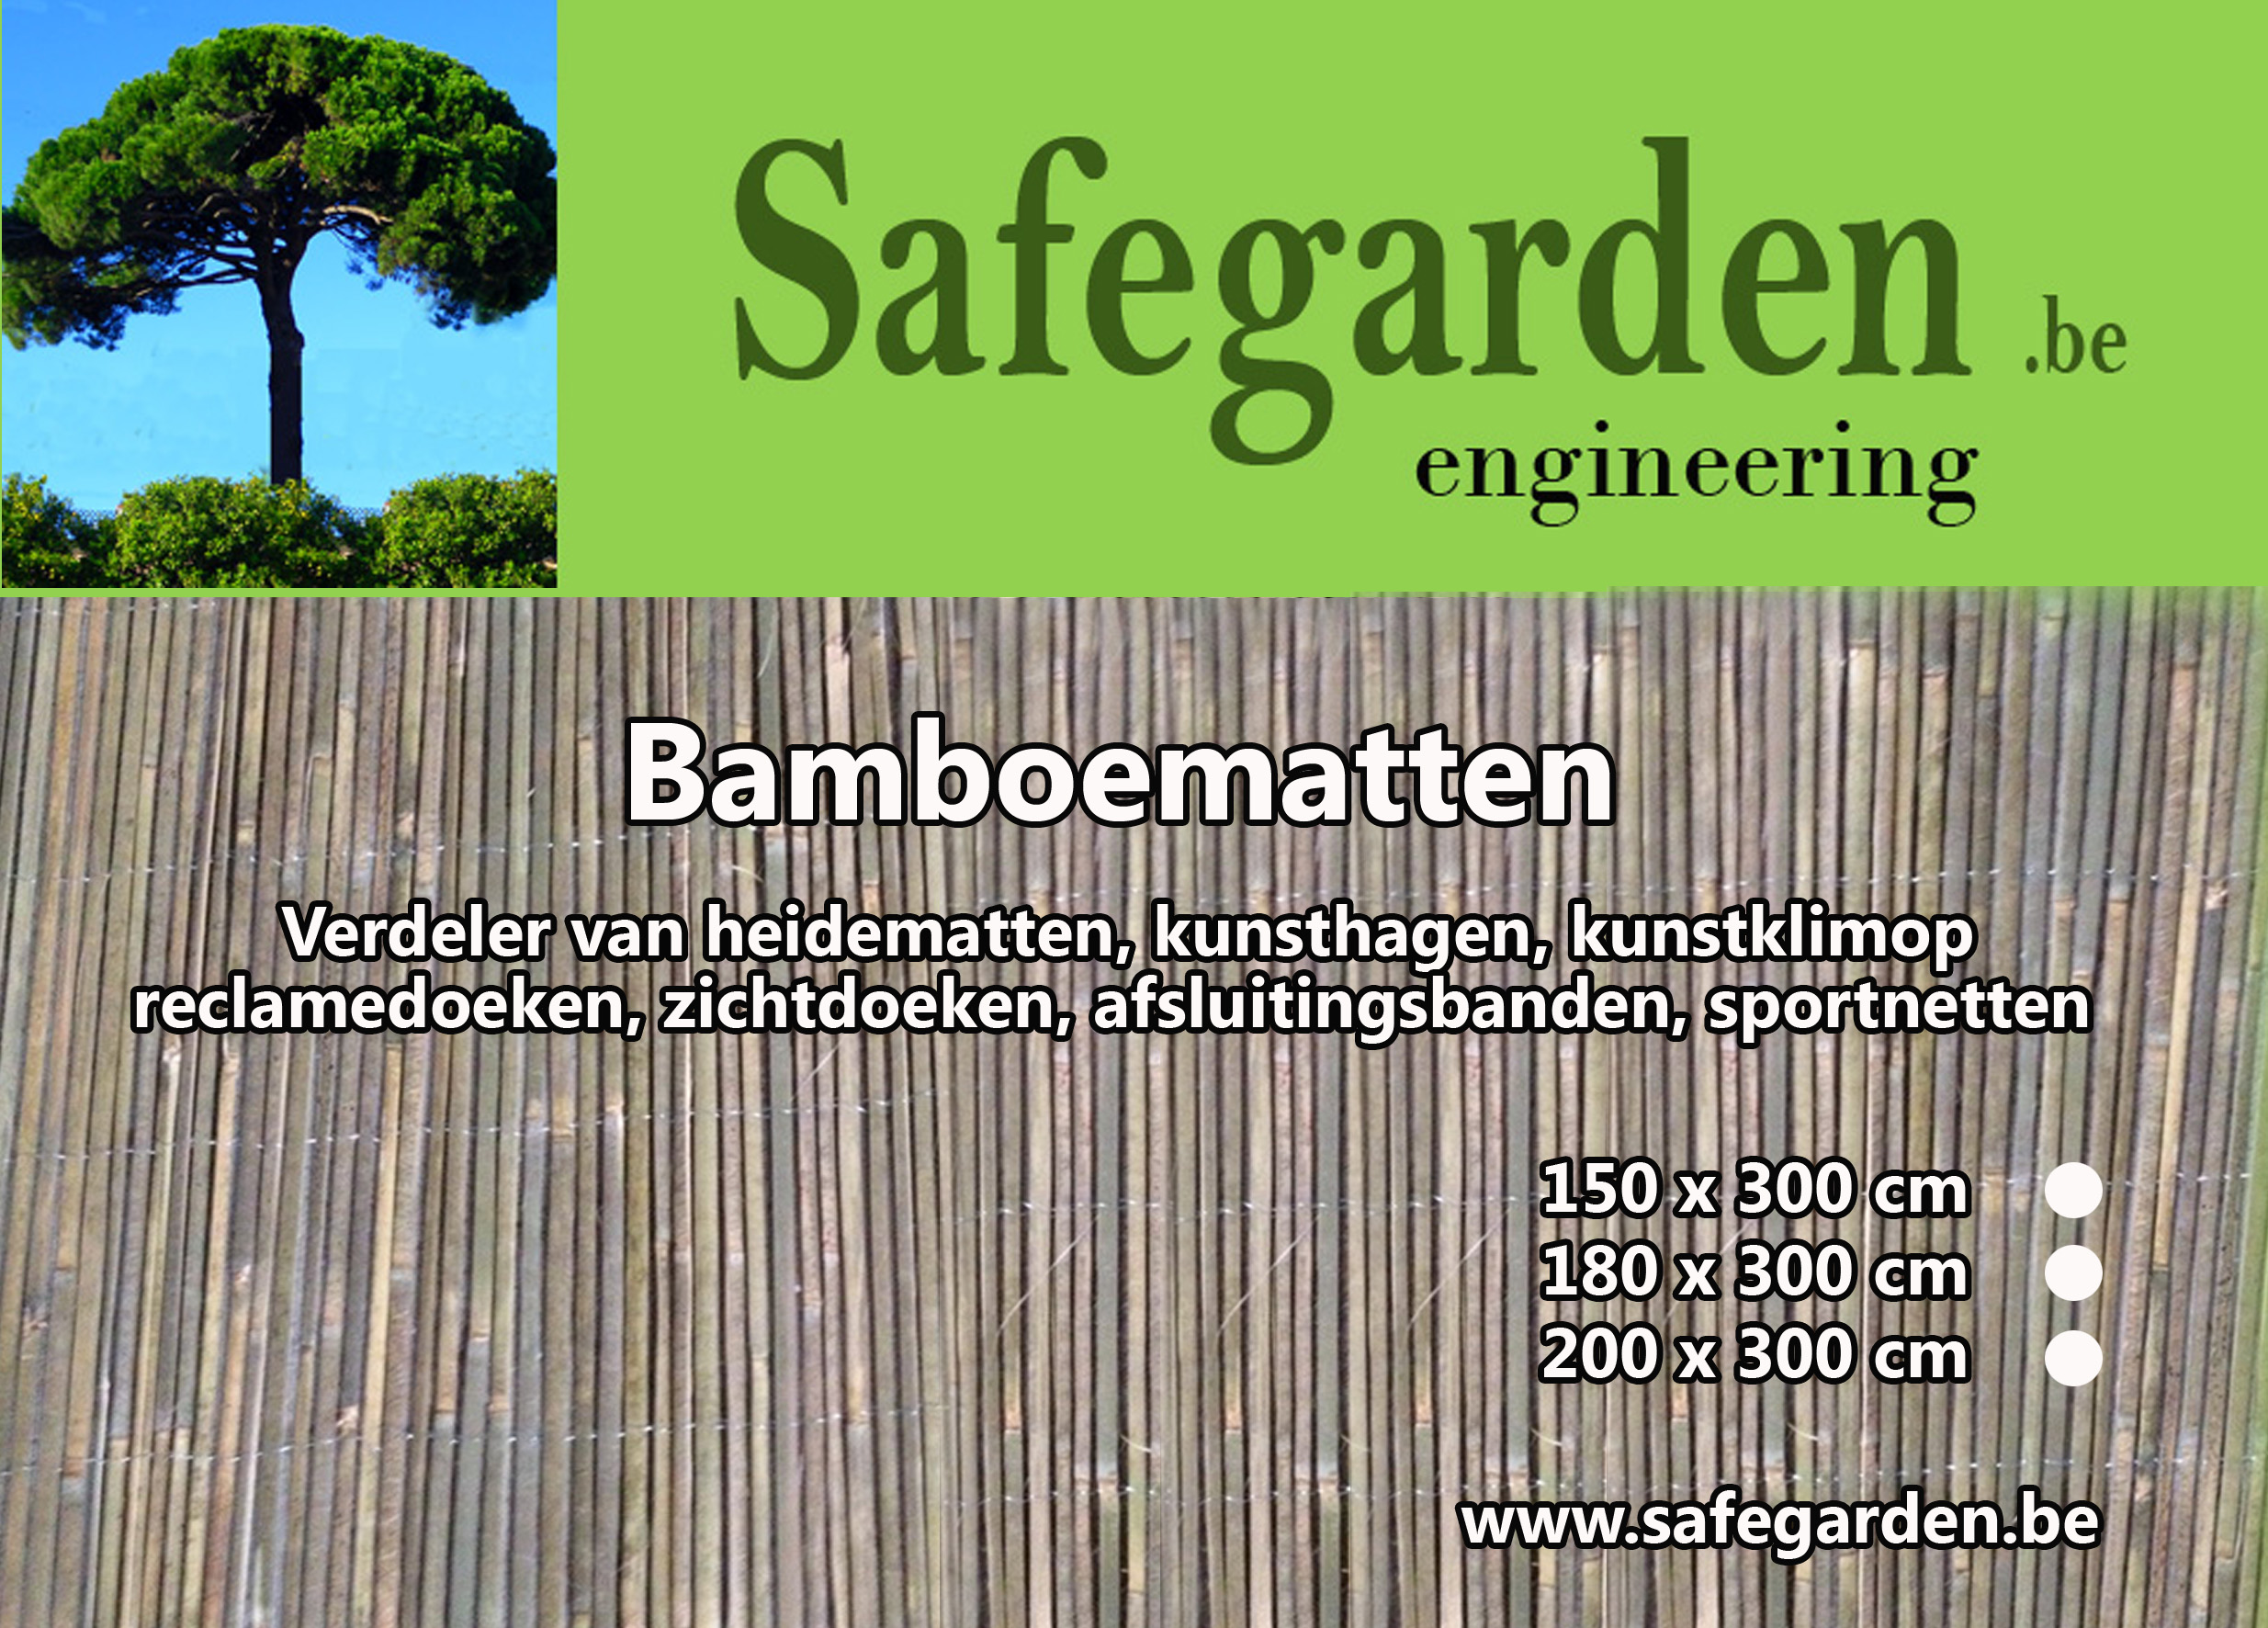 Bamboe matten en met prijzen vanaf 24,01€ - ook ecocheques